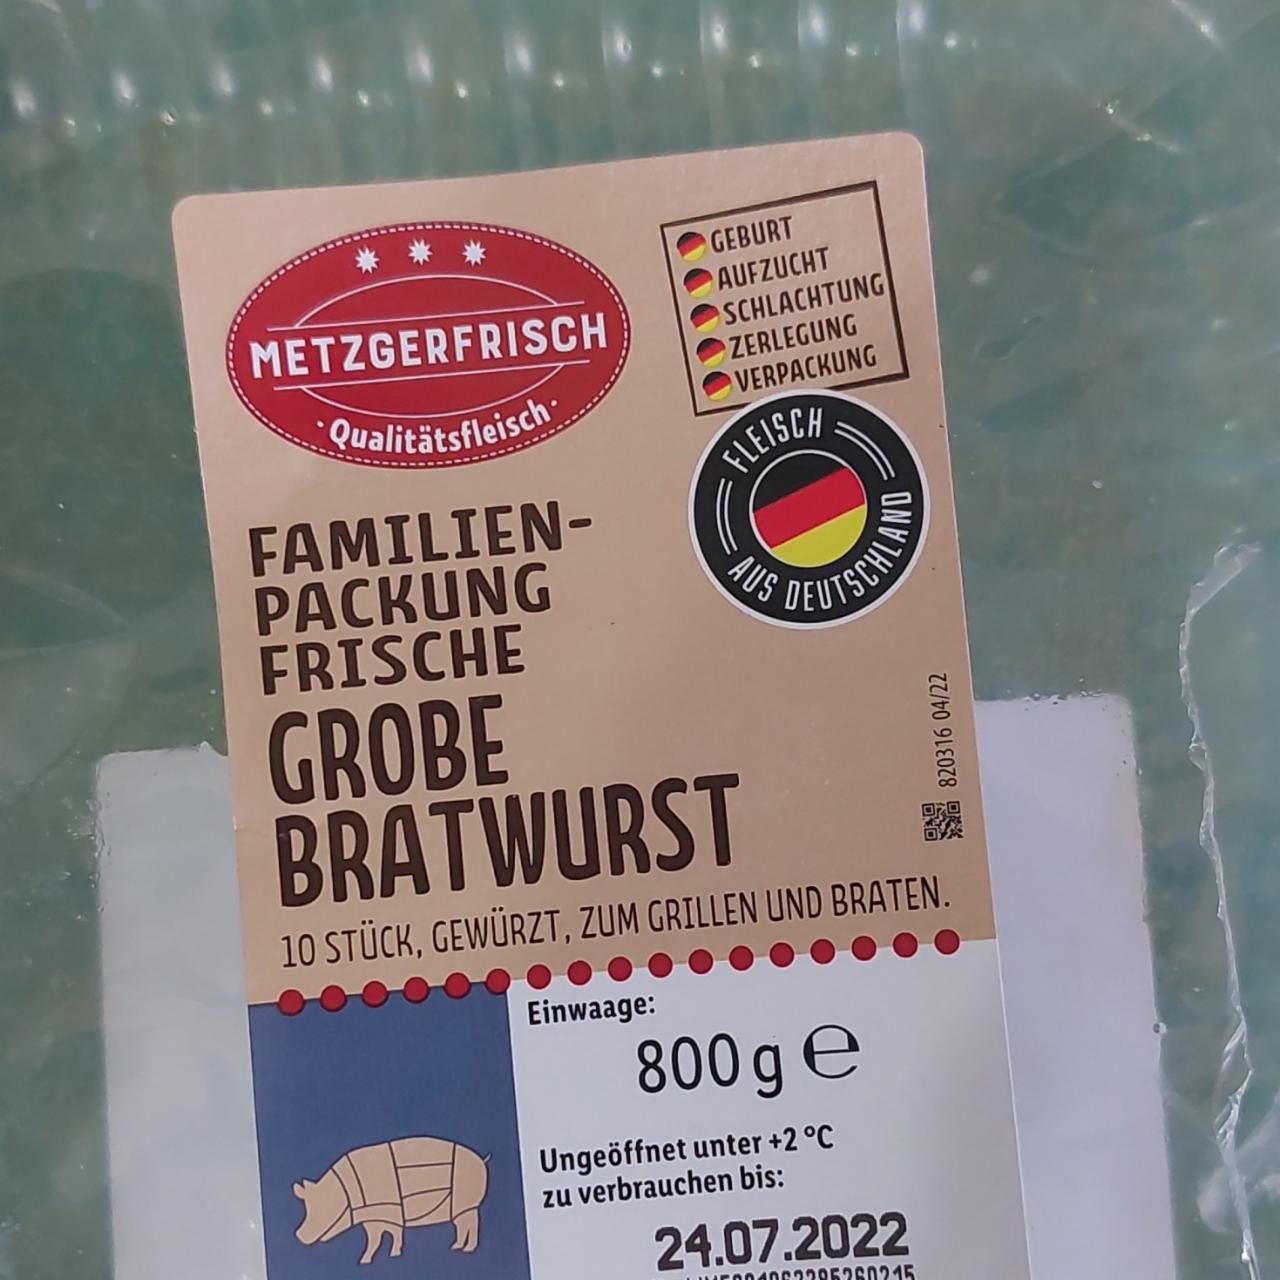 Фото - Grobe Bratwurst frisch Familien-Packung Metzgerfrisch